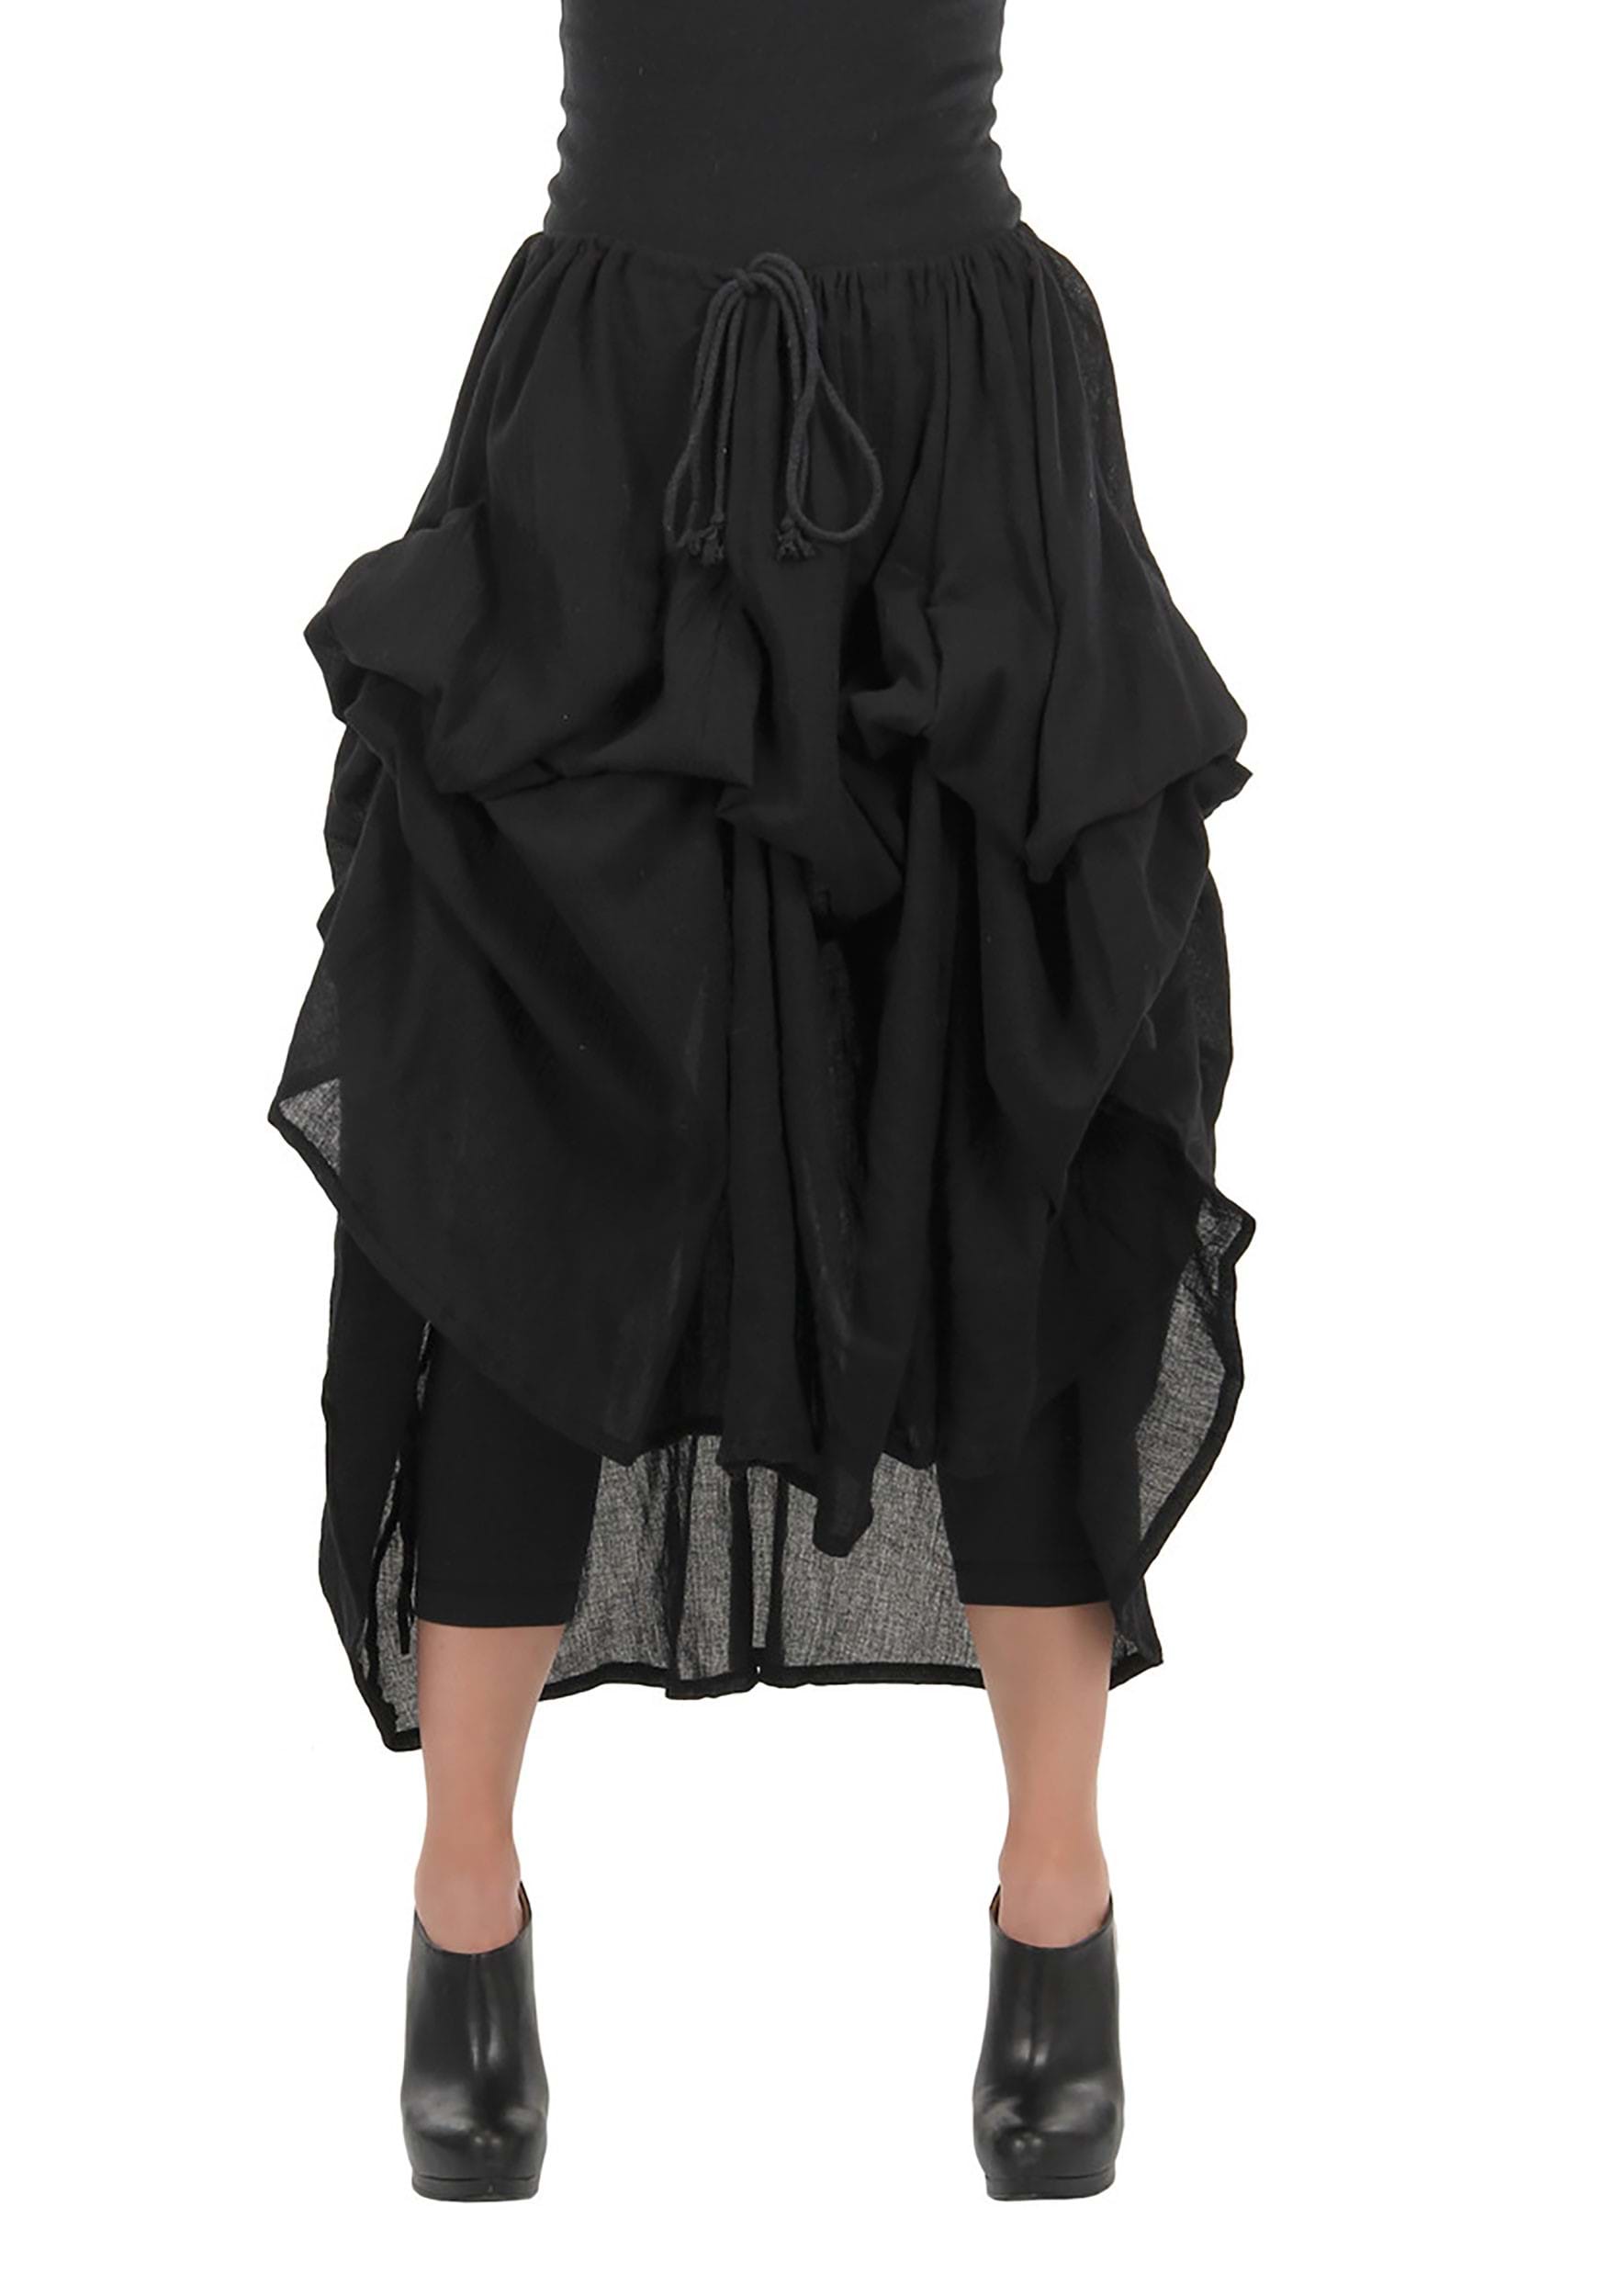 Parachute Skirt - Black